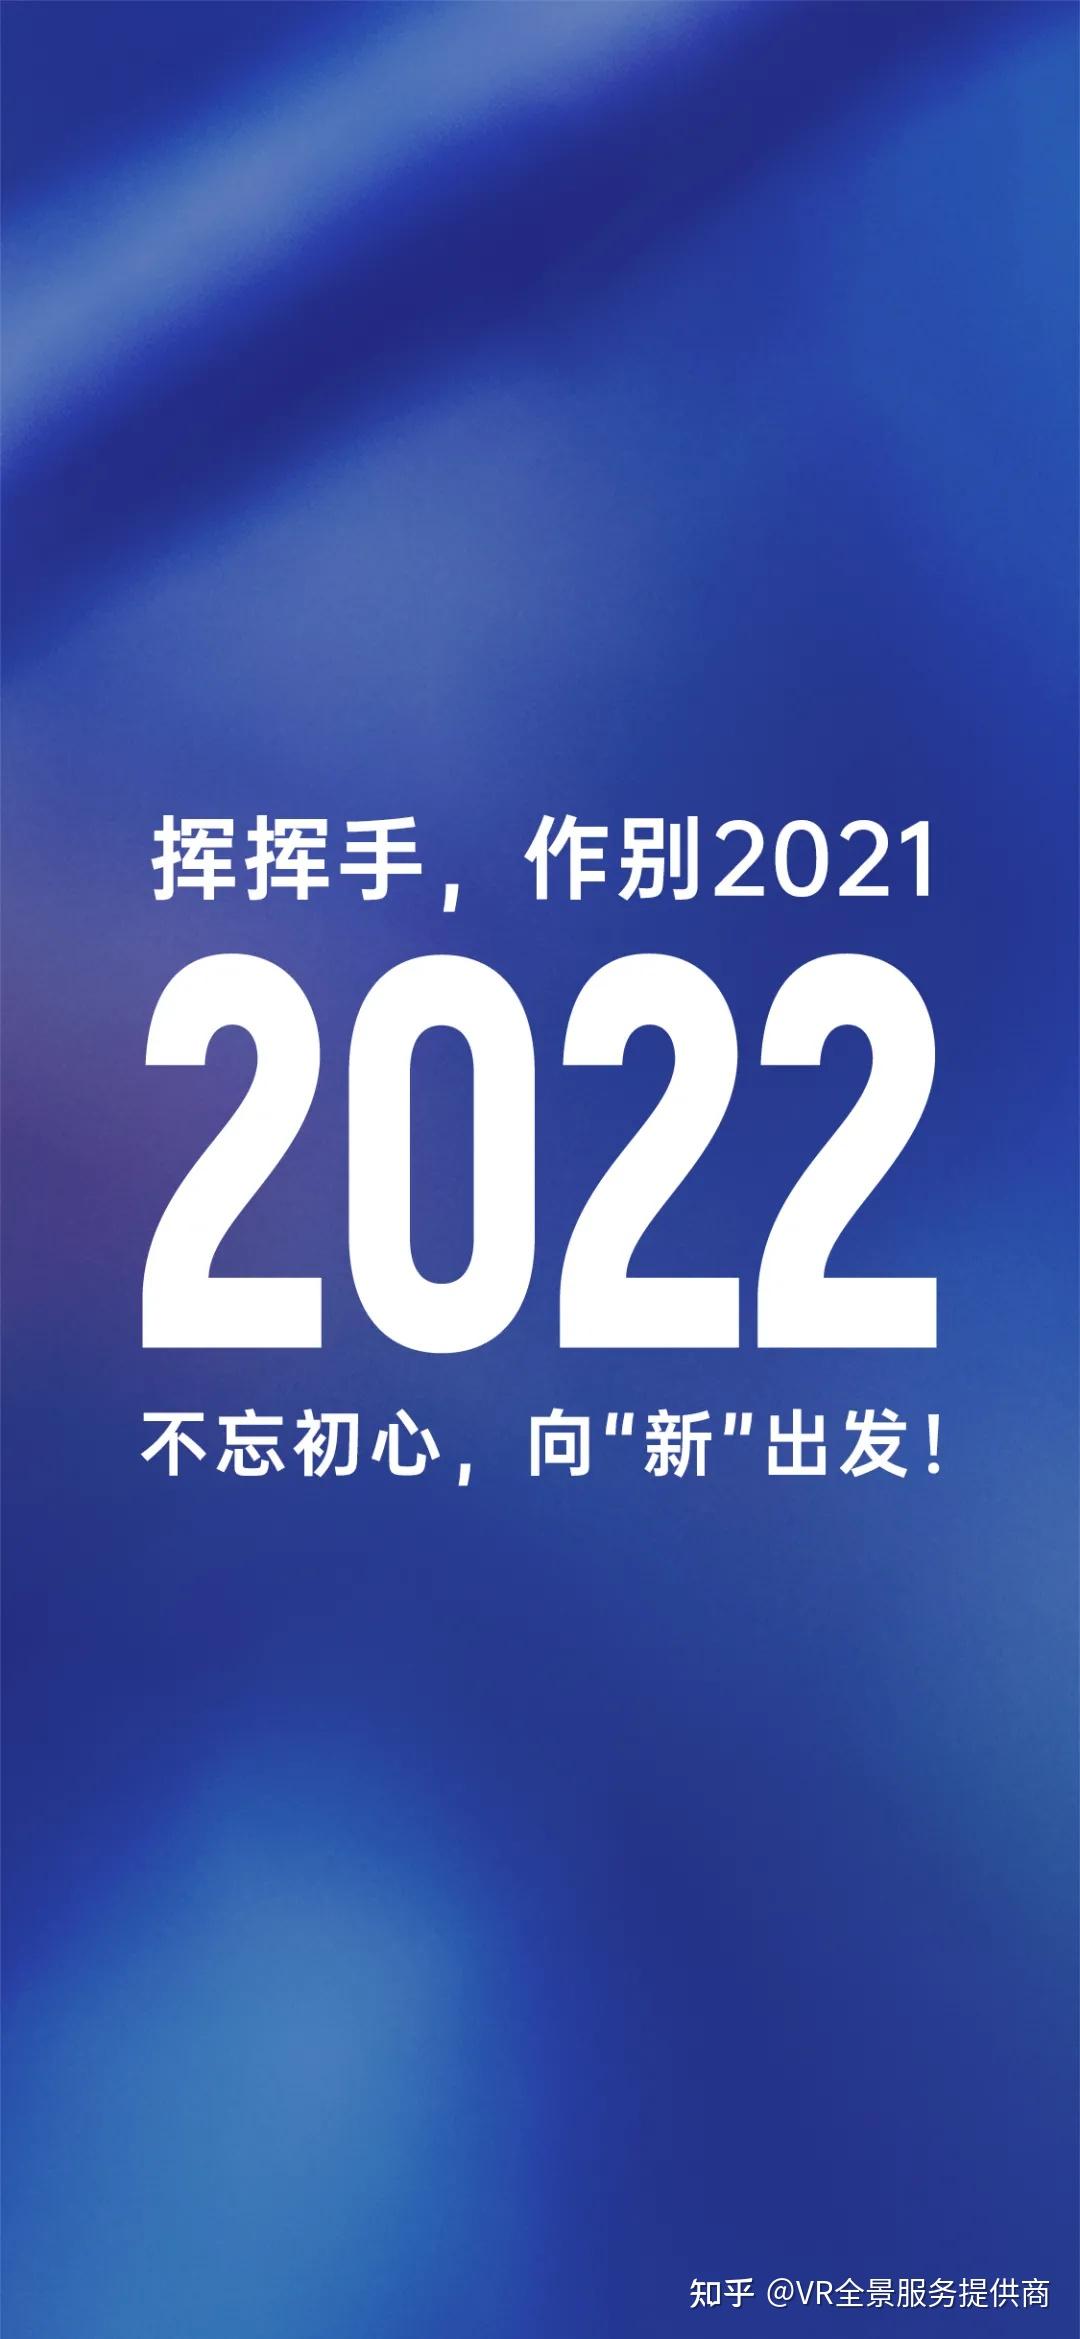 你好2022致敬了不起的2021酷雷曼vr全景年度倾情回顾